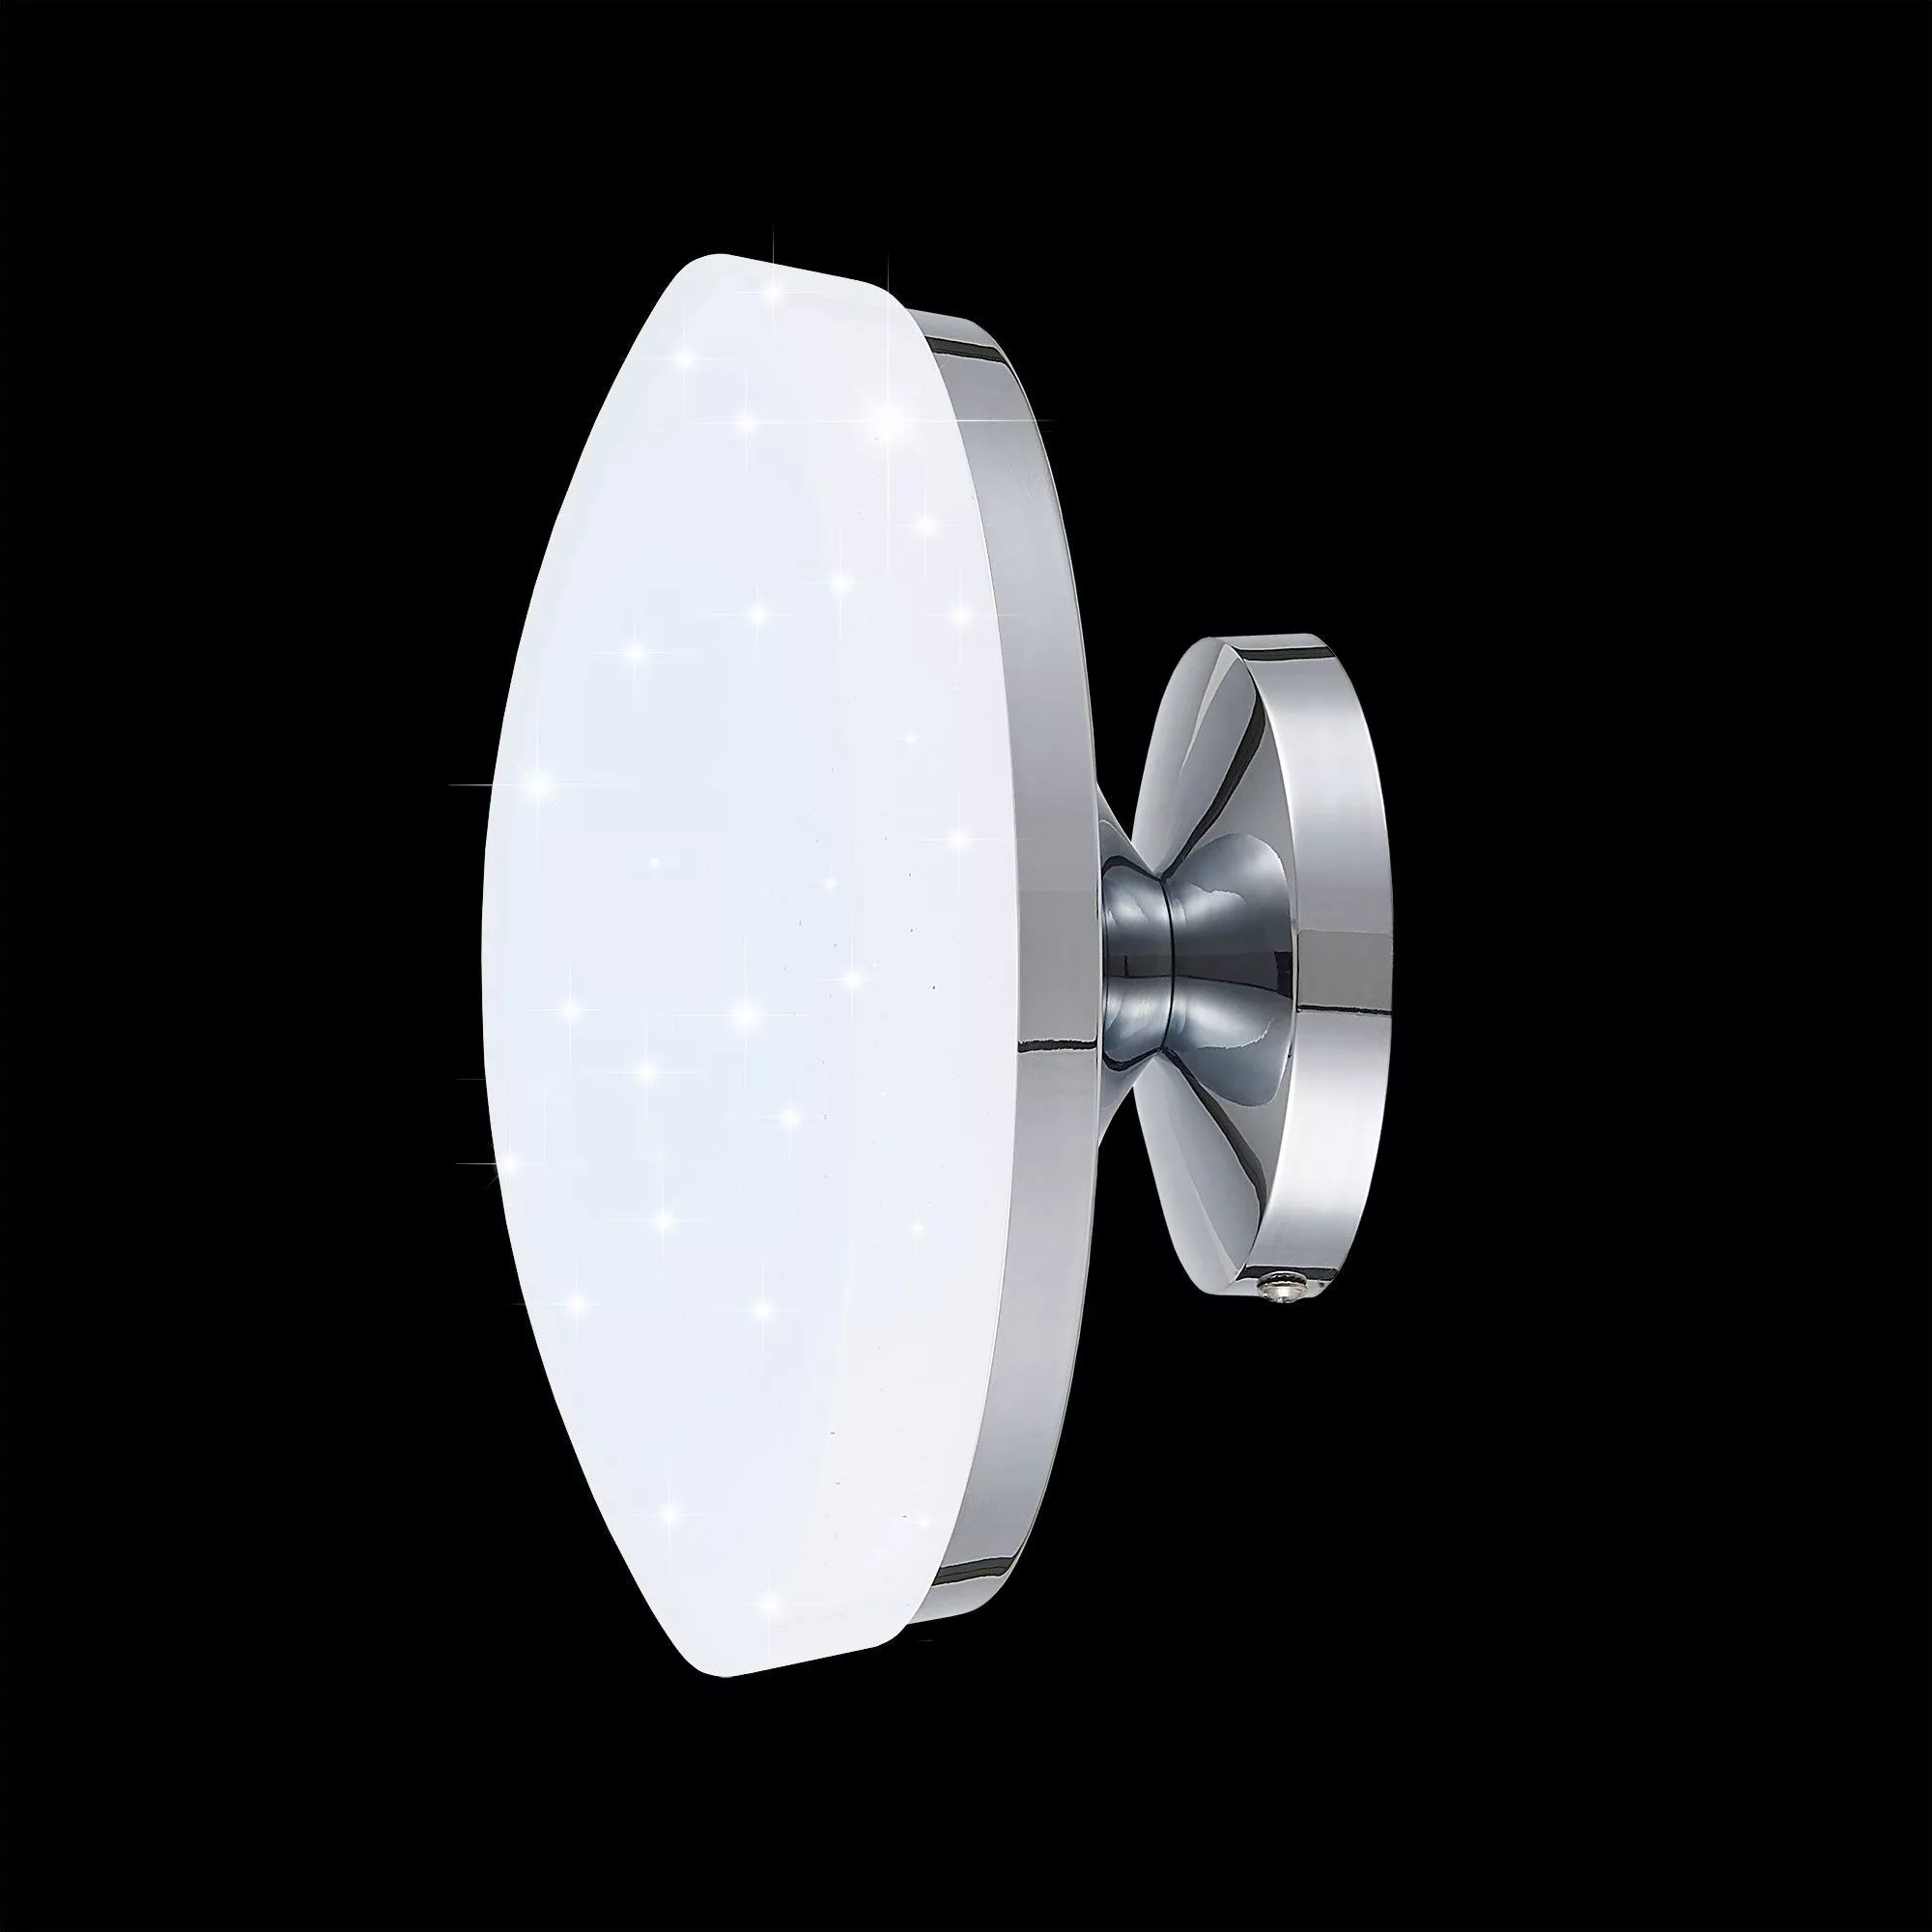 Потолочный светильник Тамбо Citilux (дневной свет)CL716011Nz